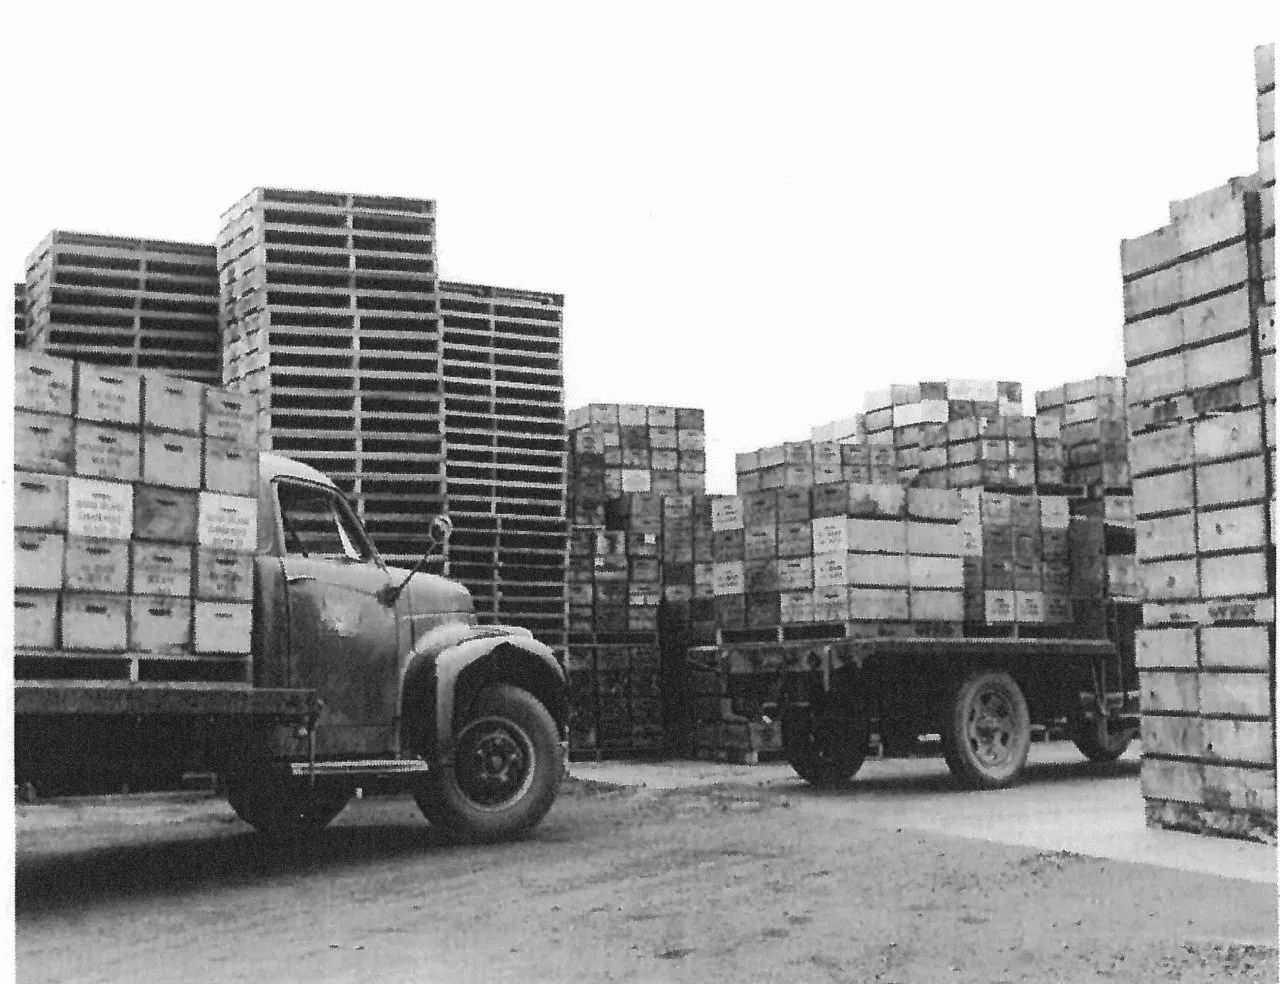 trucks carrying prunes in wooden crates